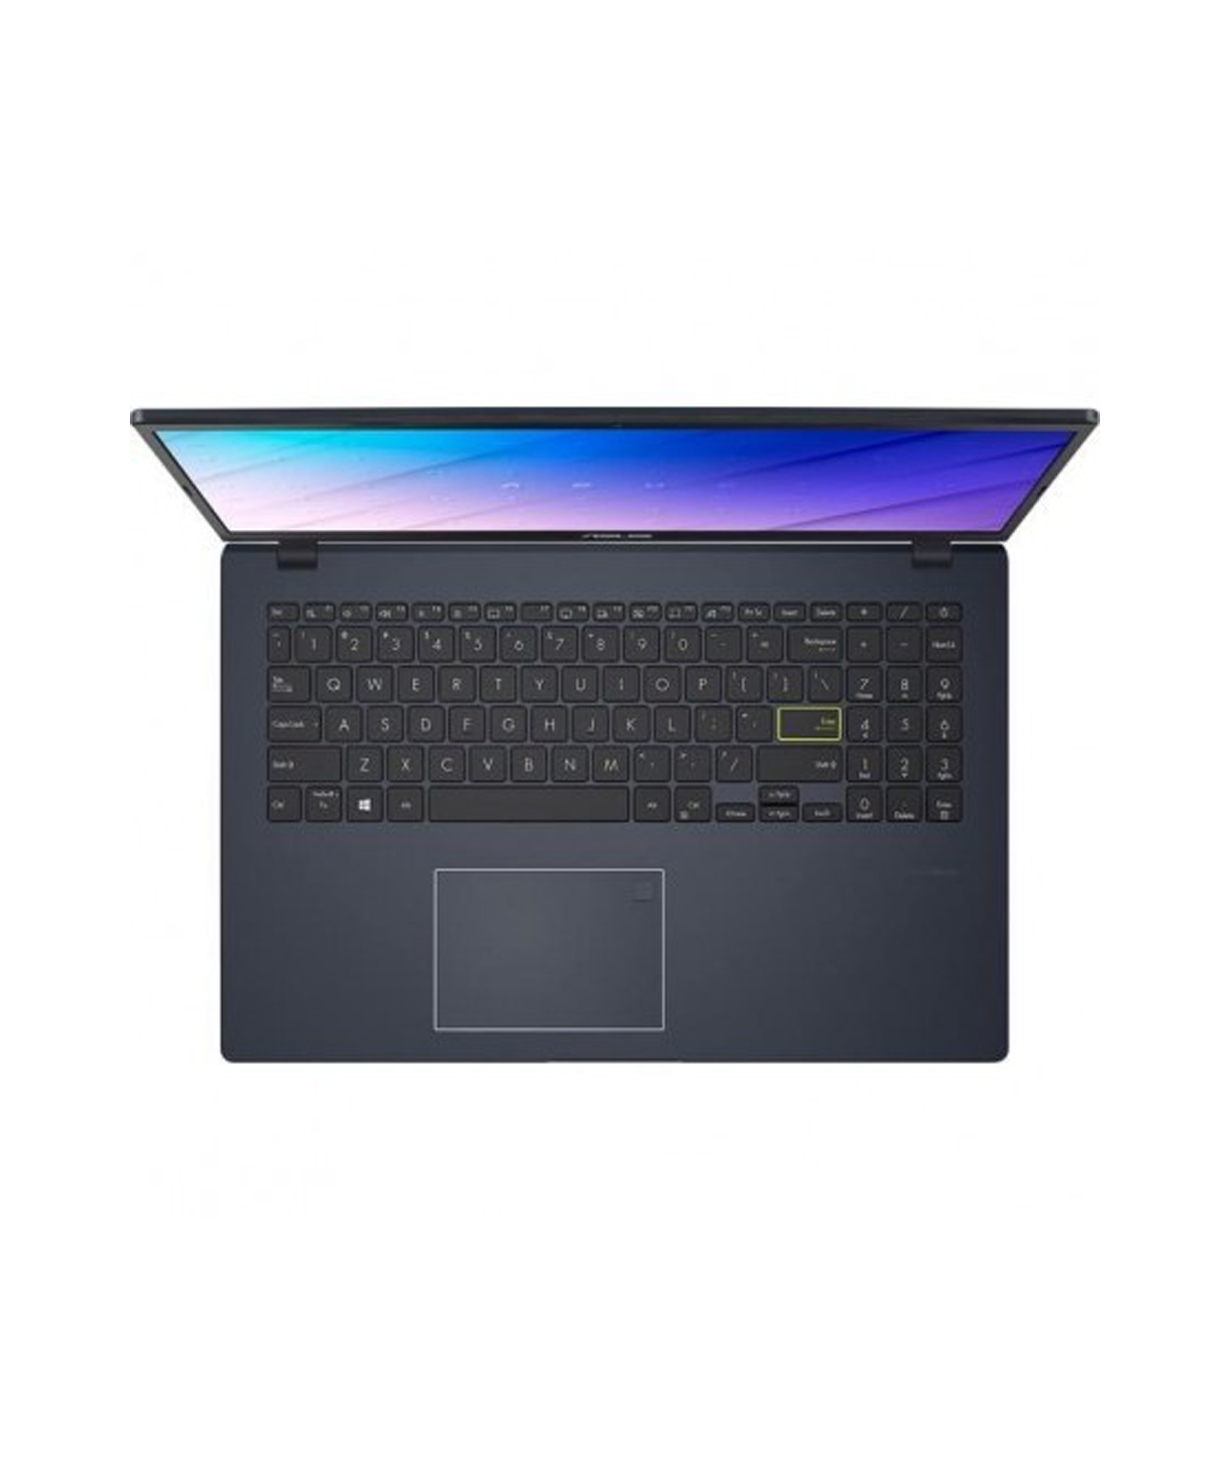 Laptop Asus VivoBook E510MA (4GB, 512GB SSD, Intel N4020, 15.6` 1366x768, black)